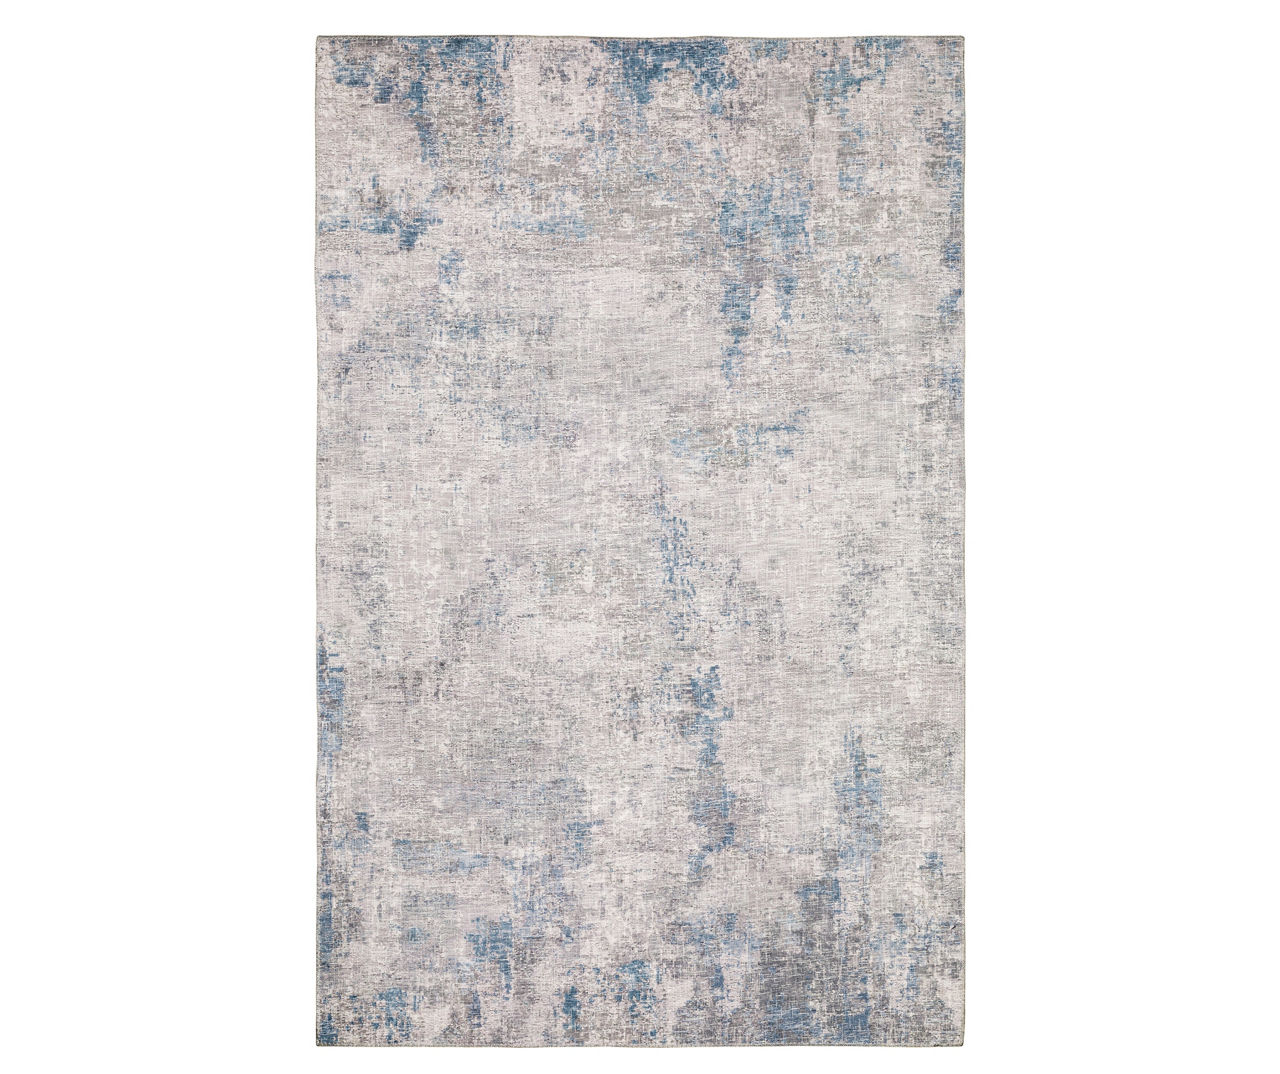 Mylan Gray & Blue Faux Hide Tile Pattern Area Rug, (2' x 8')